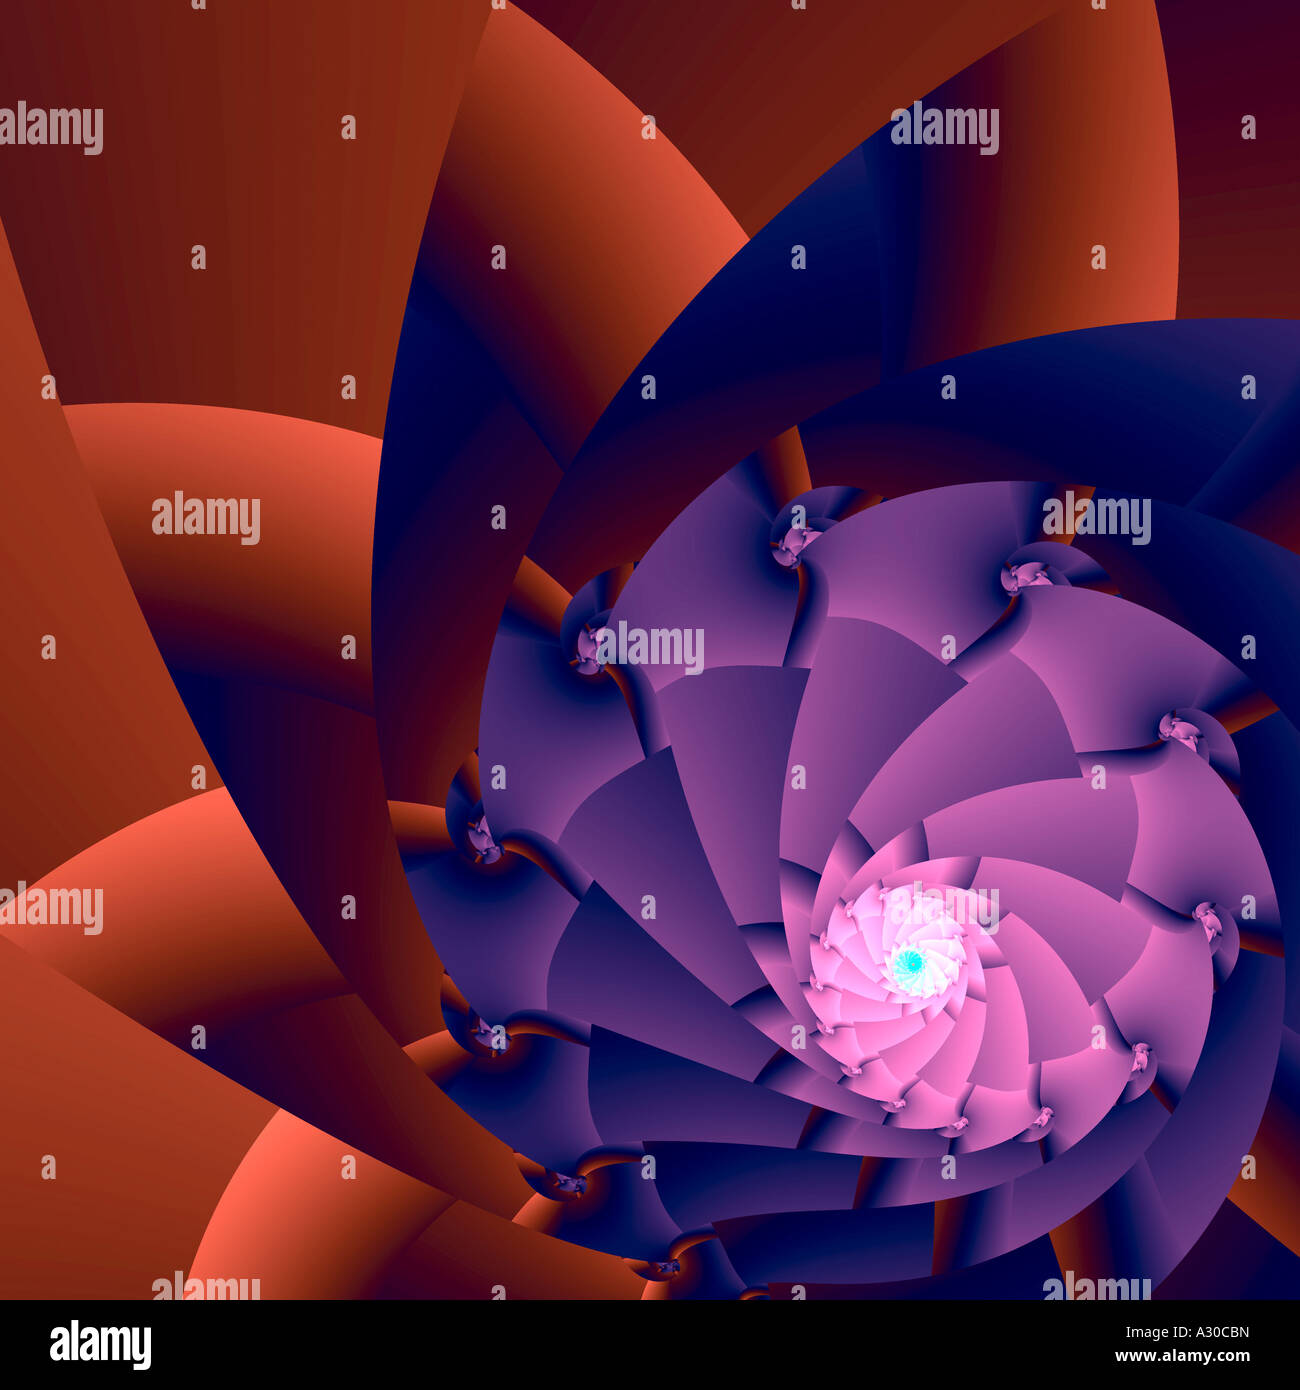 L'architecture de l'image fractale générée par ordinateur complexe botanique diaphragme excentrique illusion graphique répéter Banque D'Images